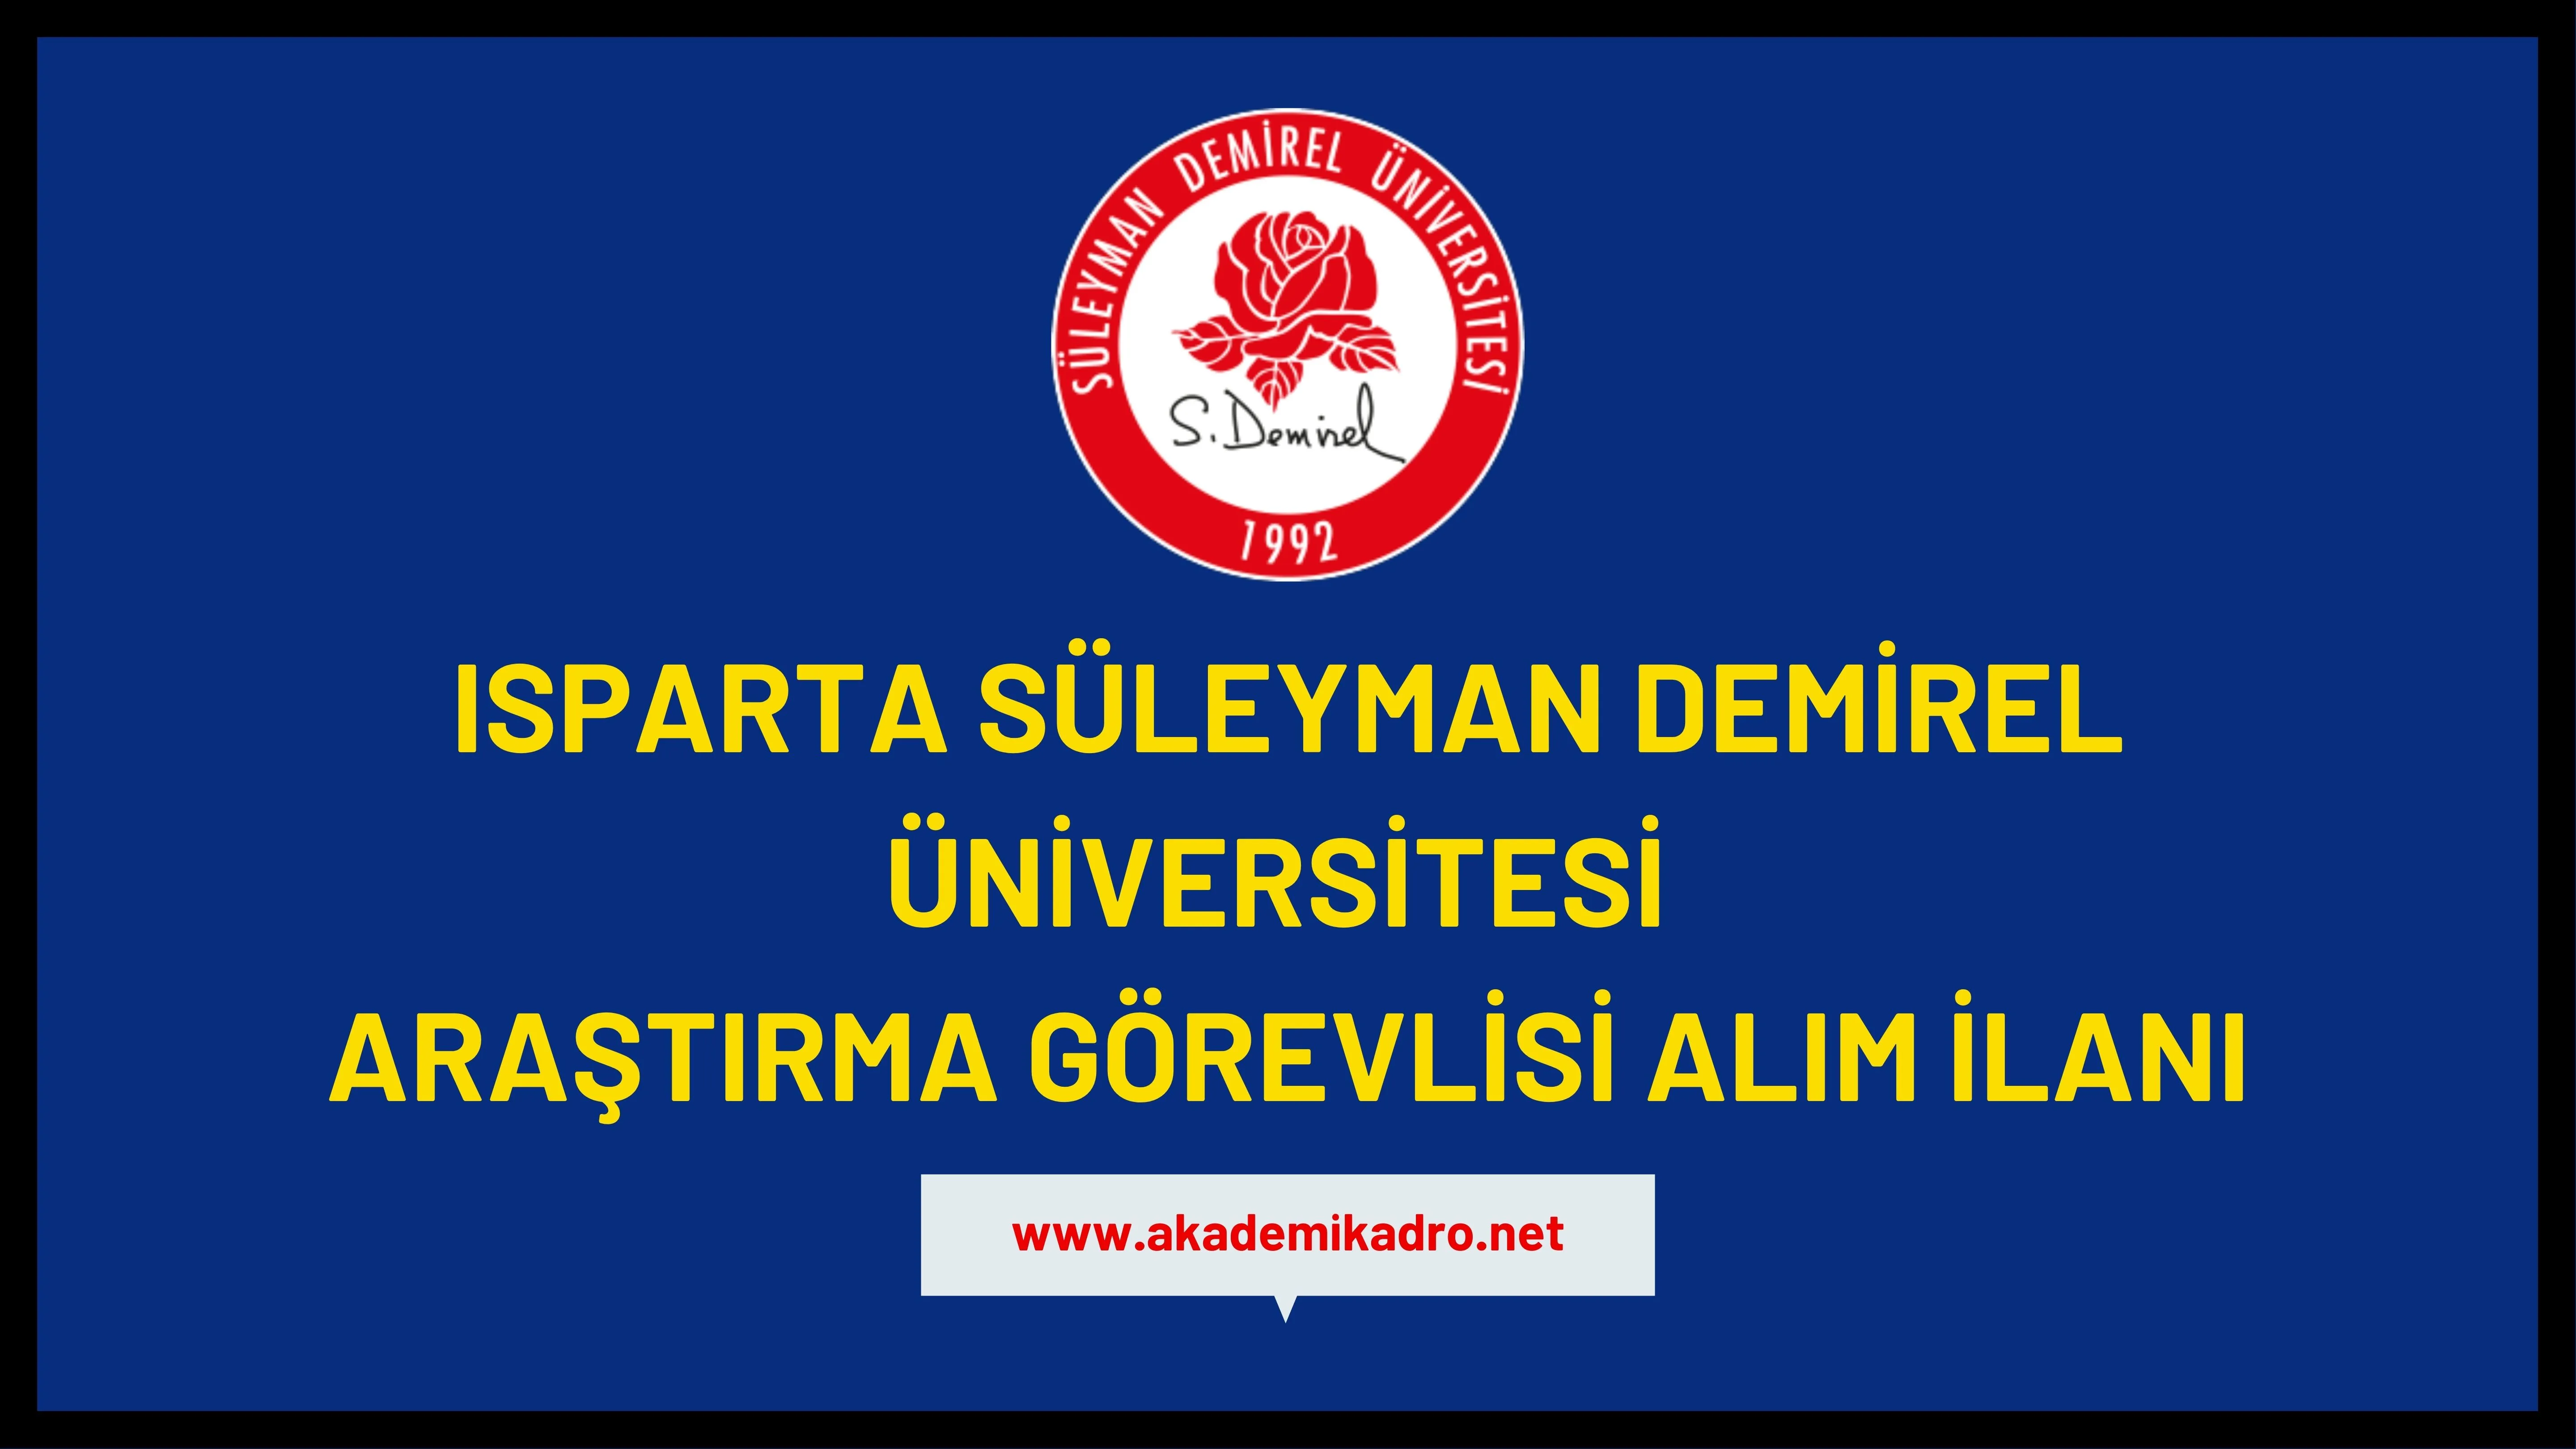 Süleyman Demirel Üniversitesi 2 Araştırma görevlisi görevlisi ve Öğretim üyesi alacak.